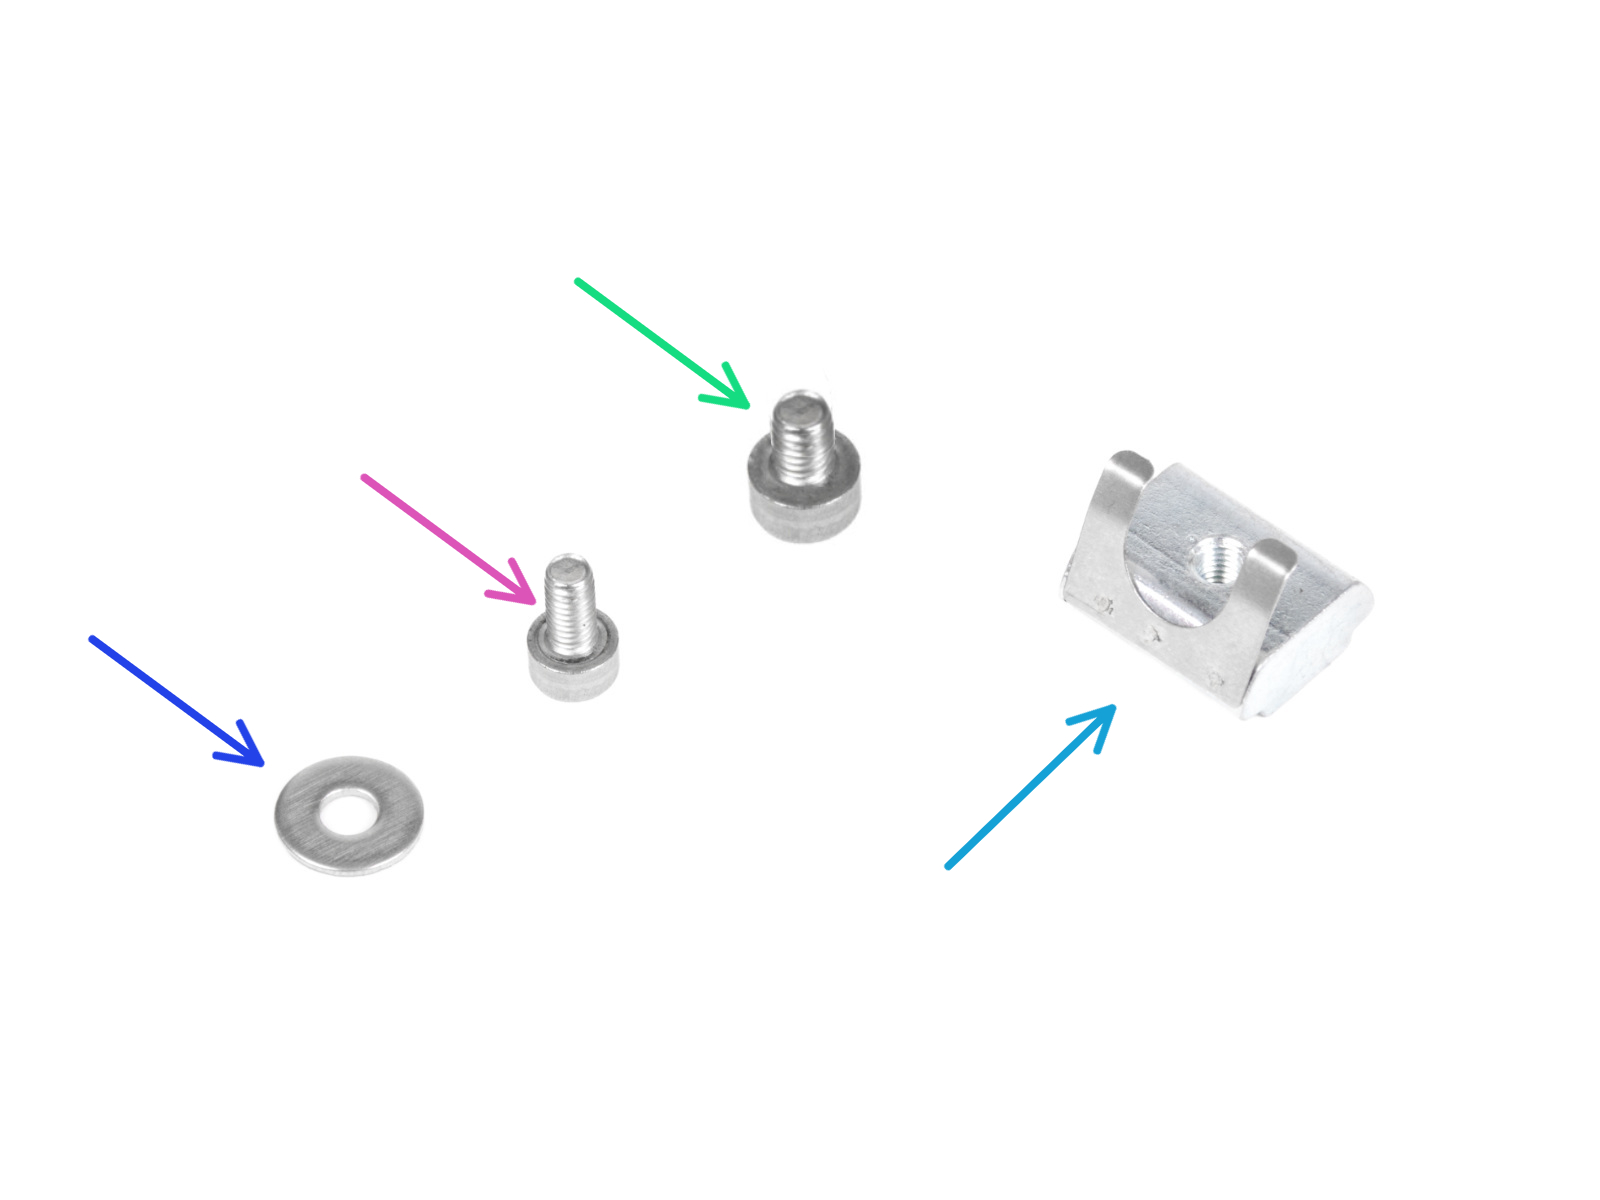 Zdroj napájení - PE kabel (stříbrný zdroj): příprava dílů